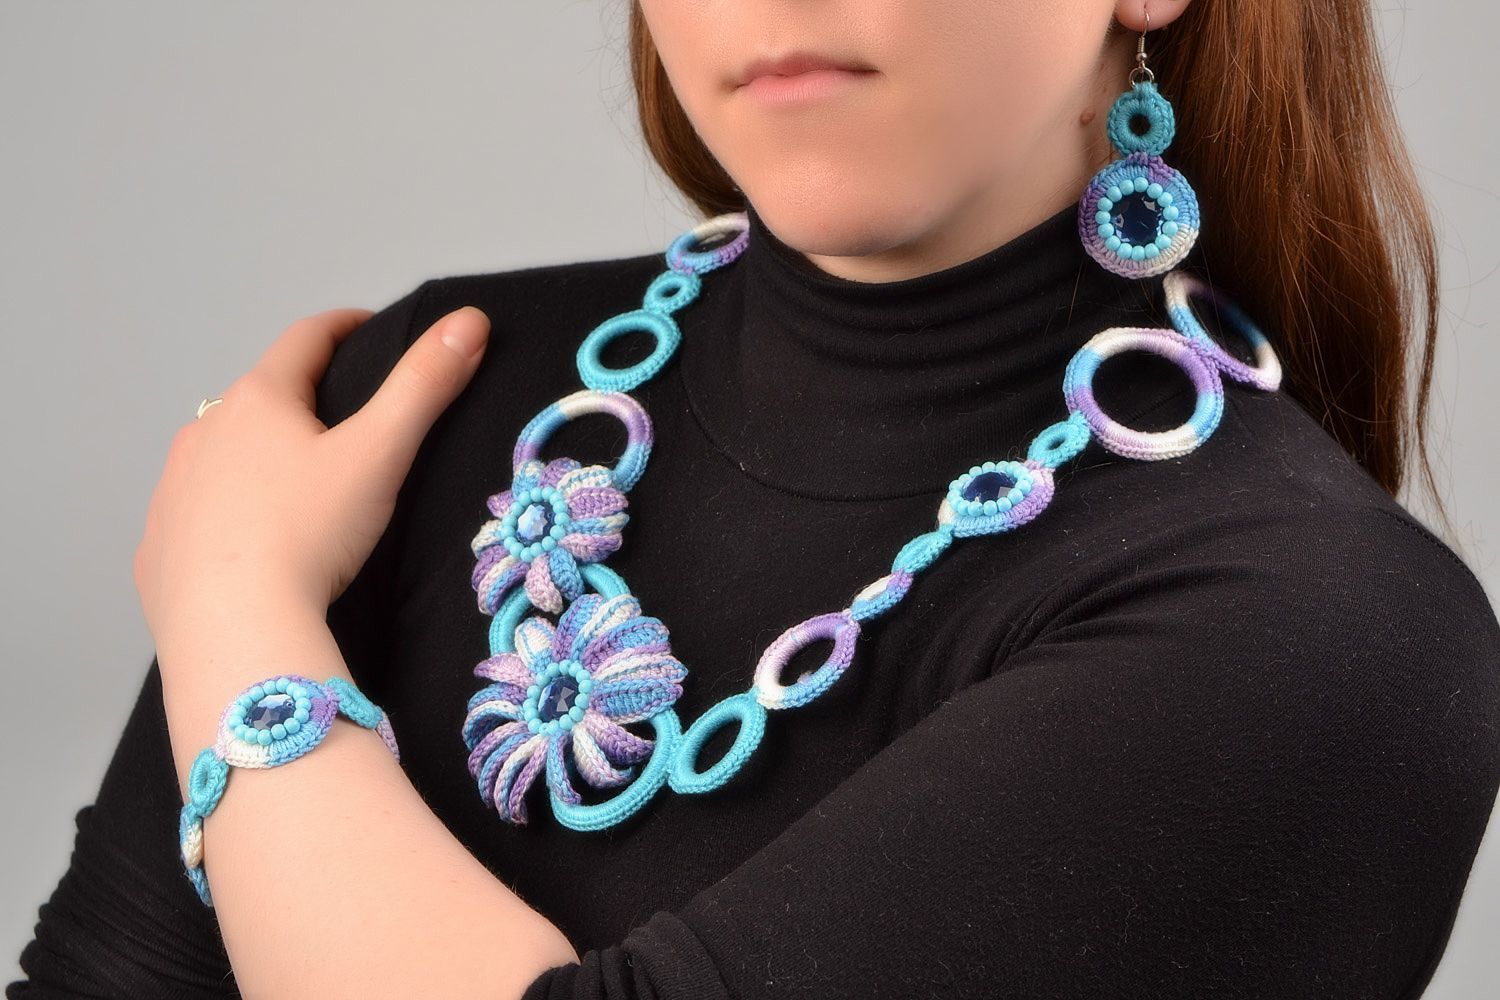 Textil Schmuckset aus Fäden 3 Stück Ohrringe Armband Collier Handarbeit in Blau foto 1